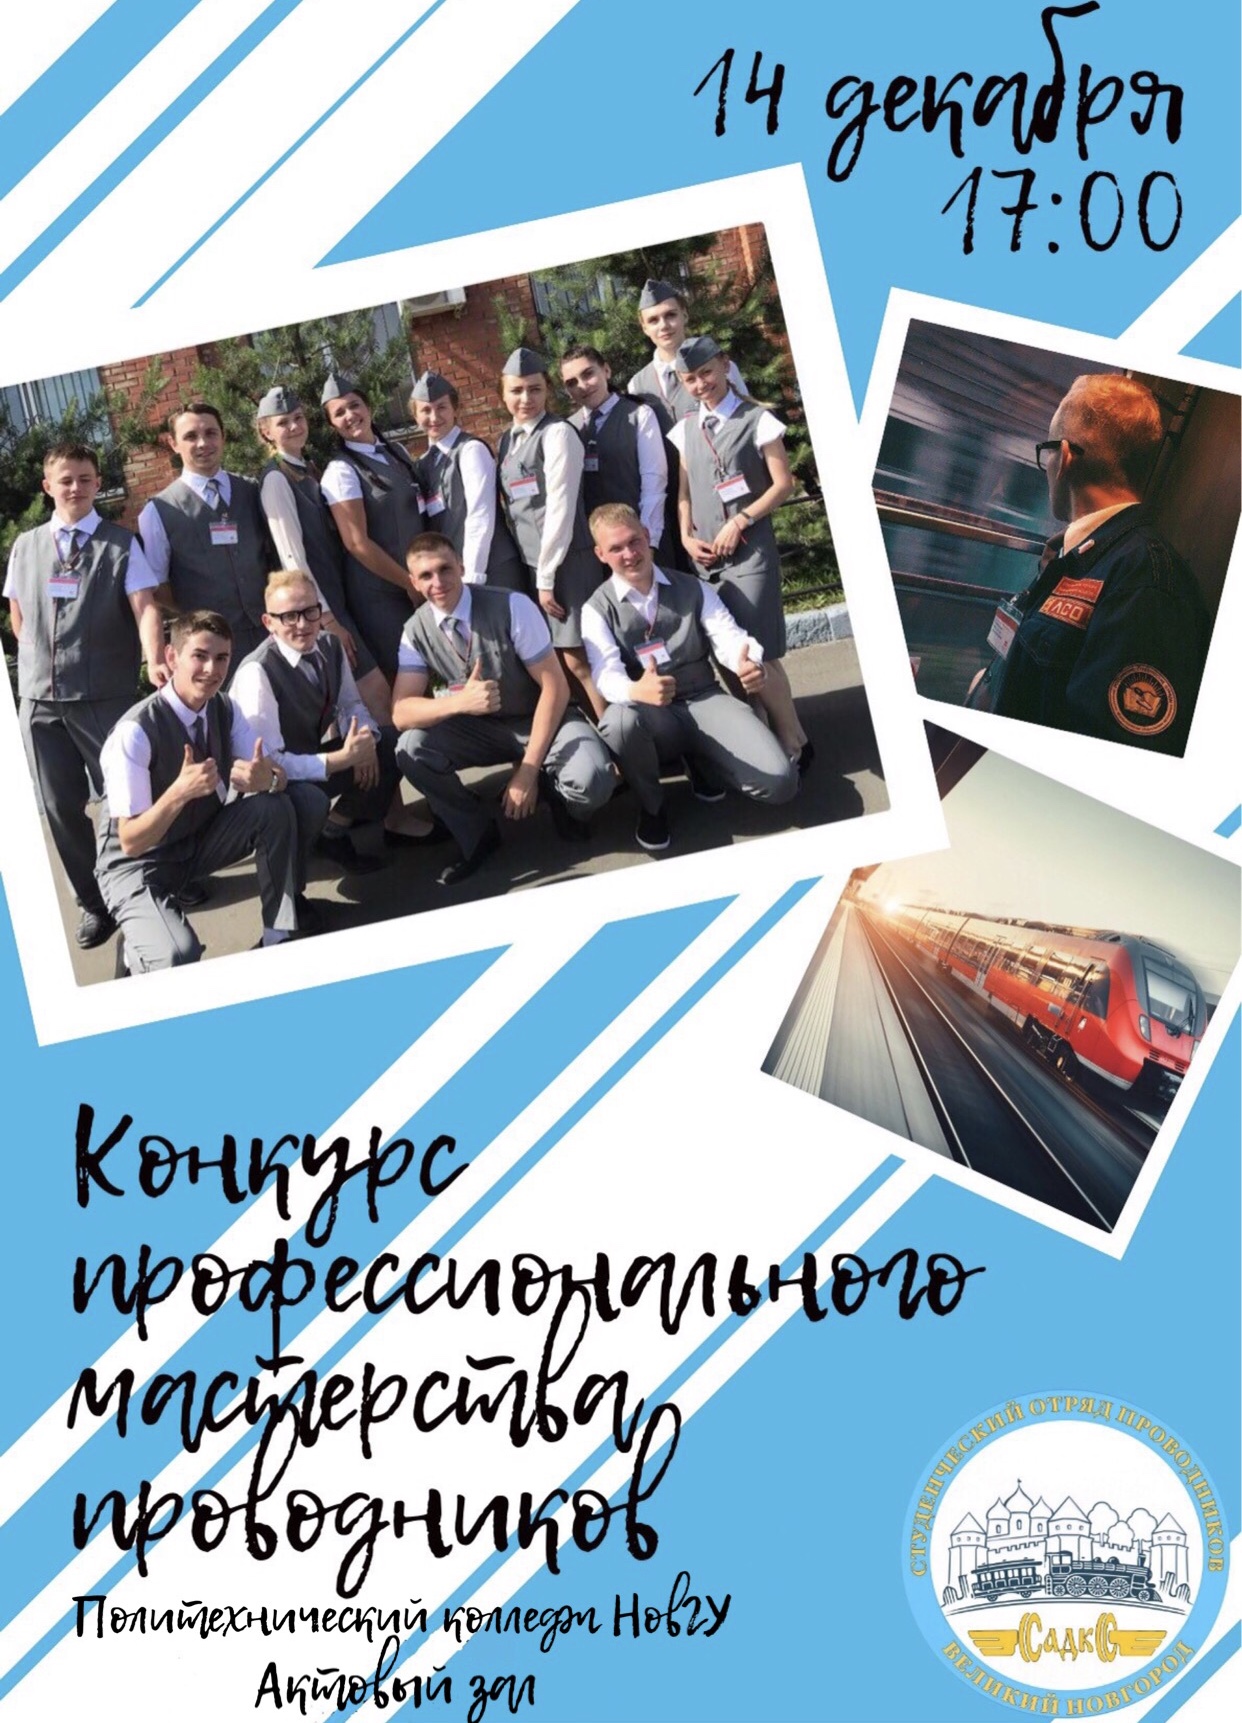 В Великом Новгороде пройдет студенческий конкурс профмастерства проводников